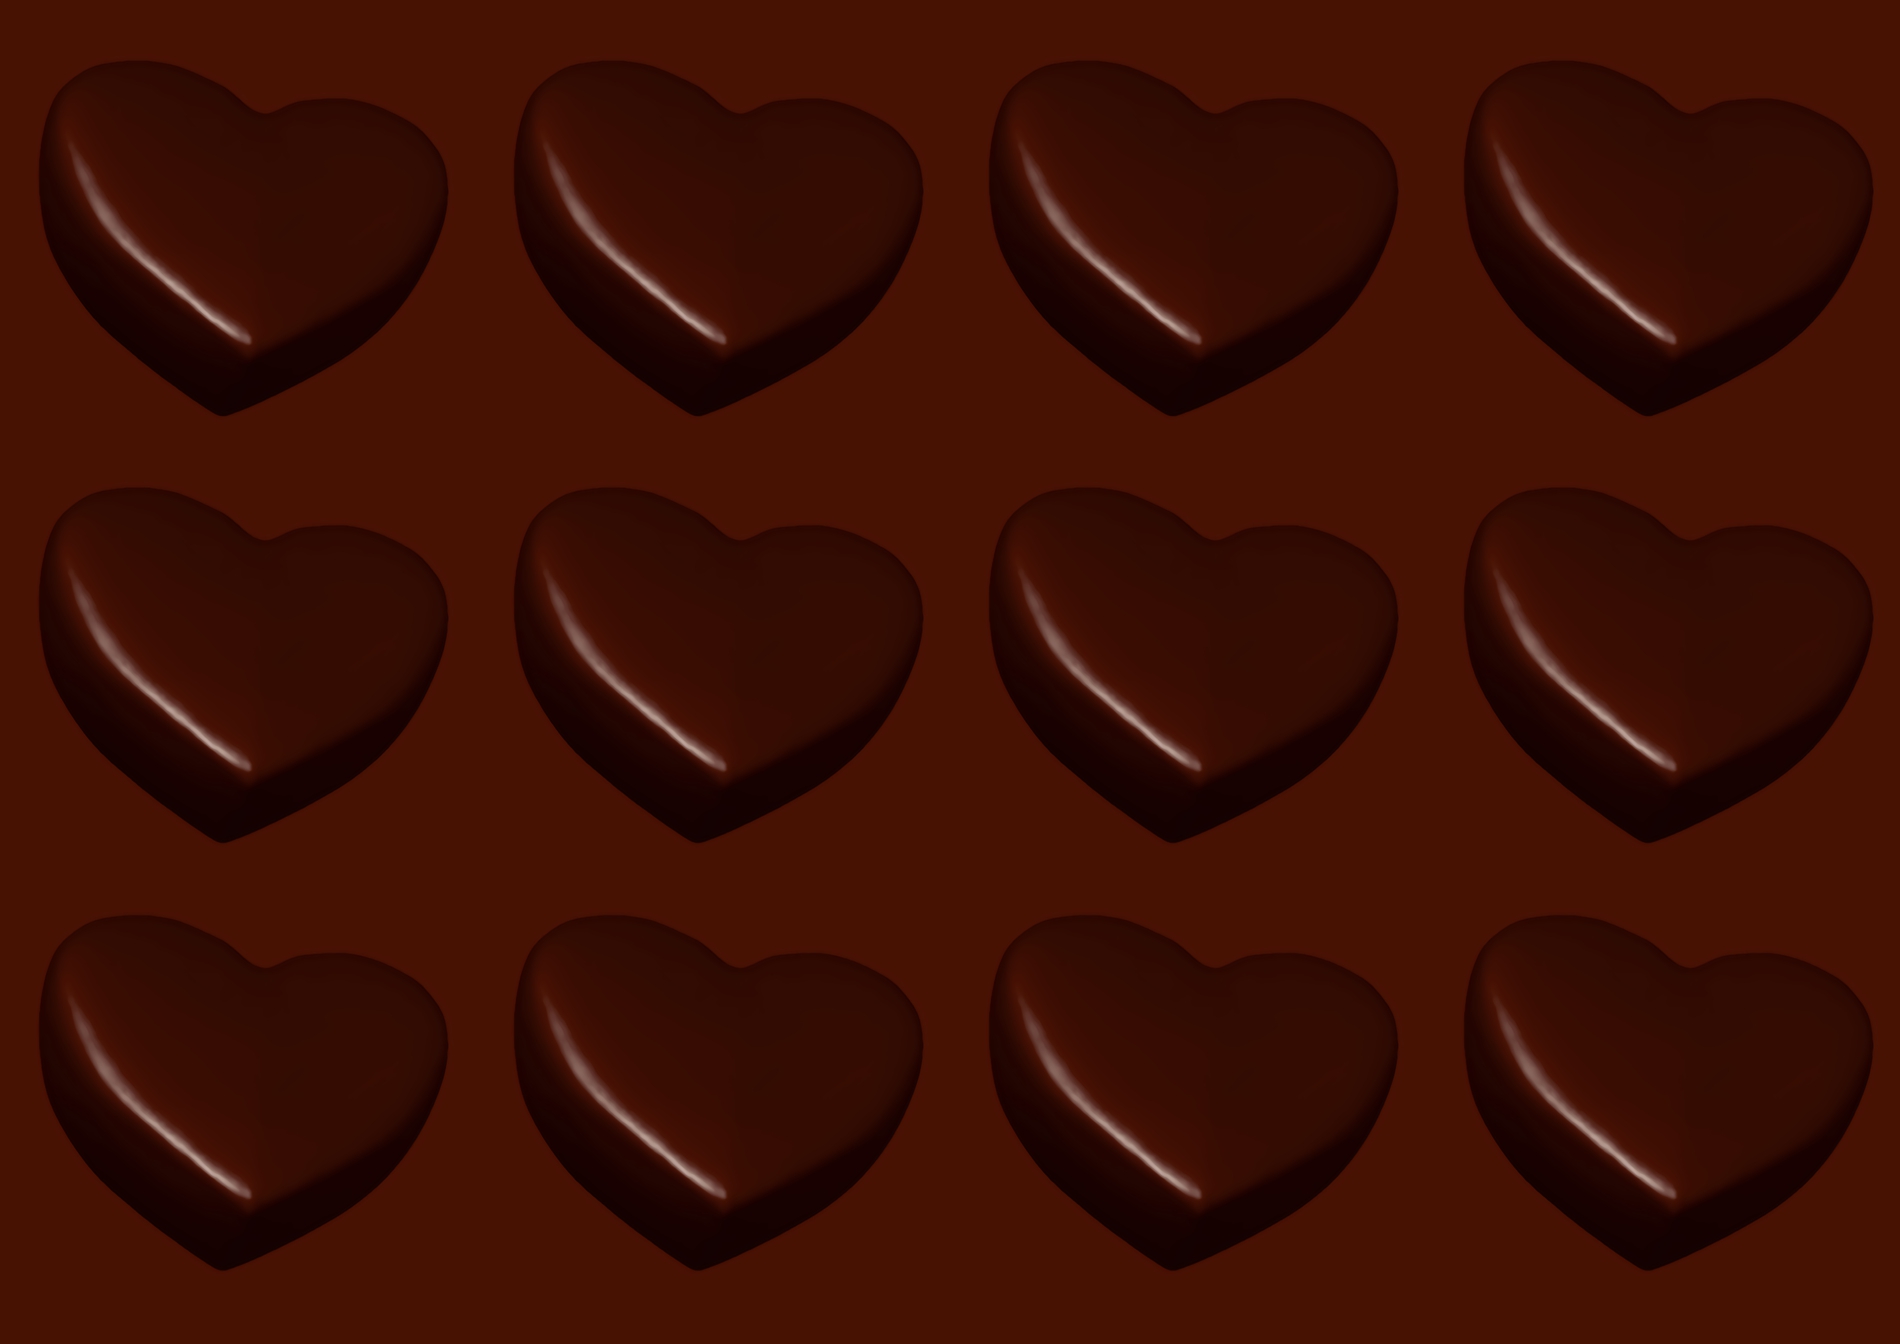 クーベルチュールチョコレートをそのまま食べる